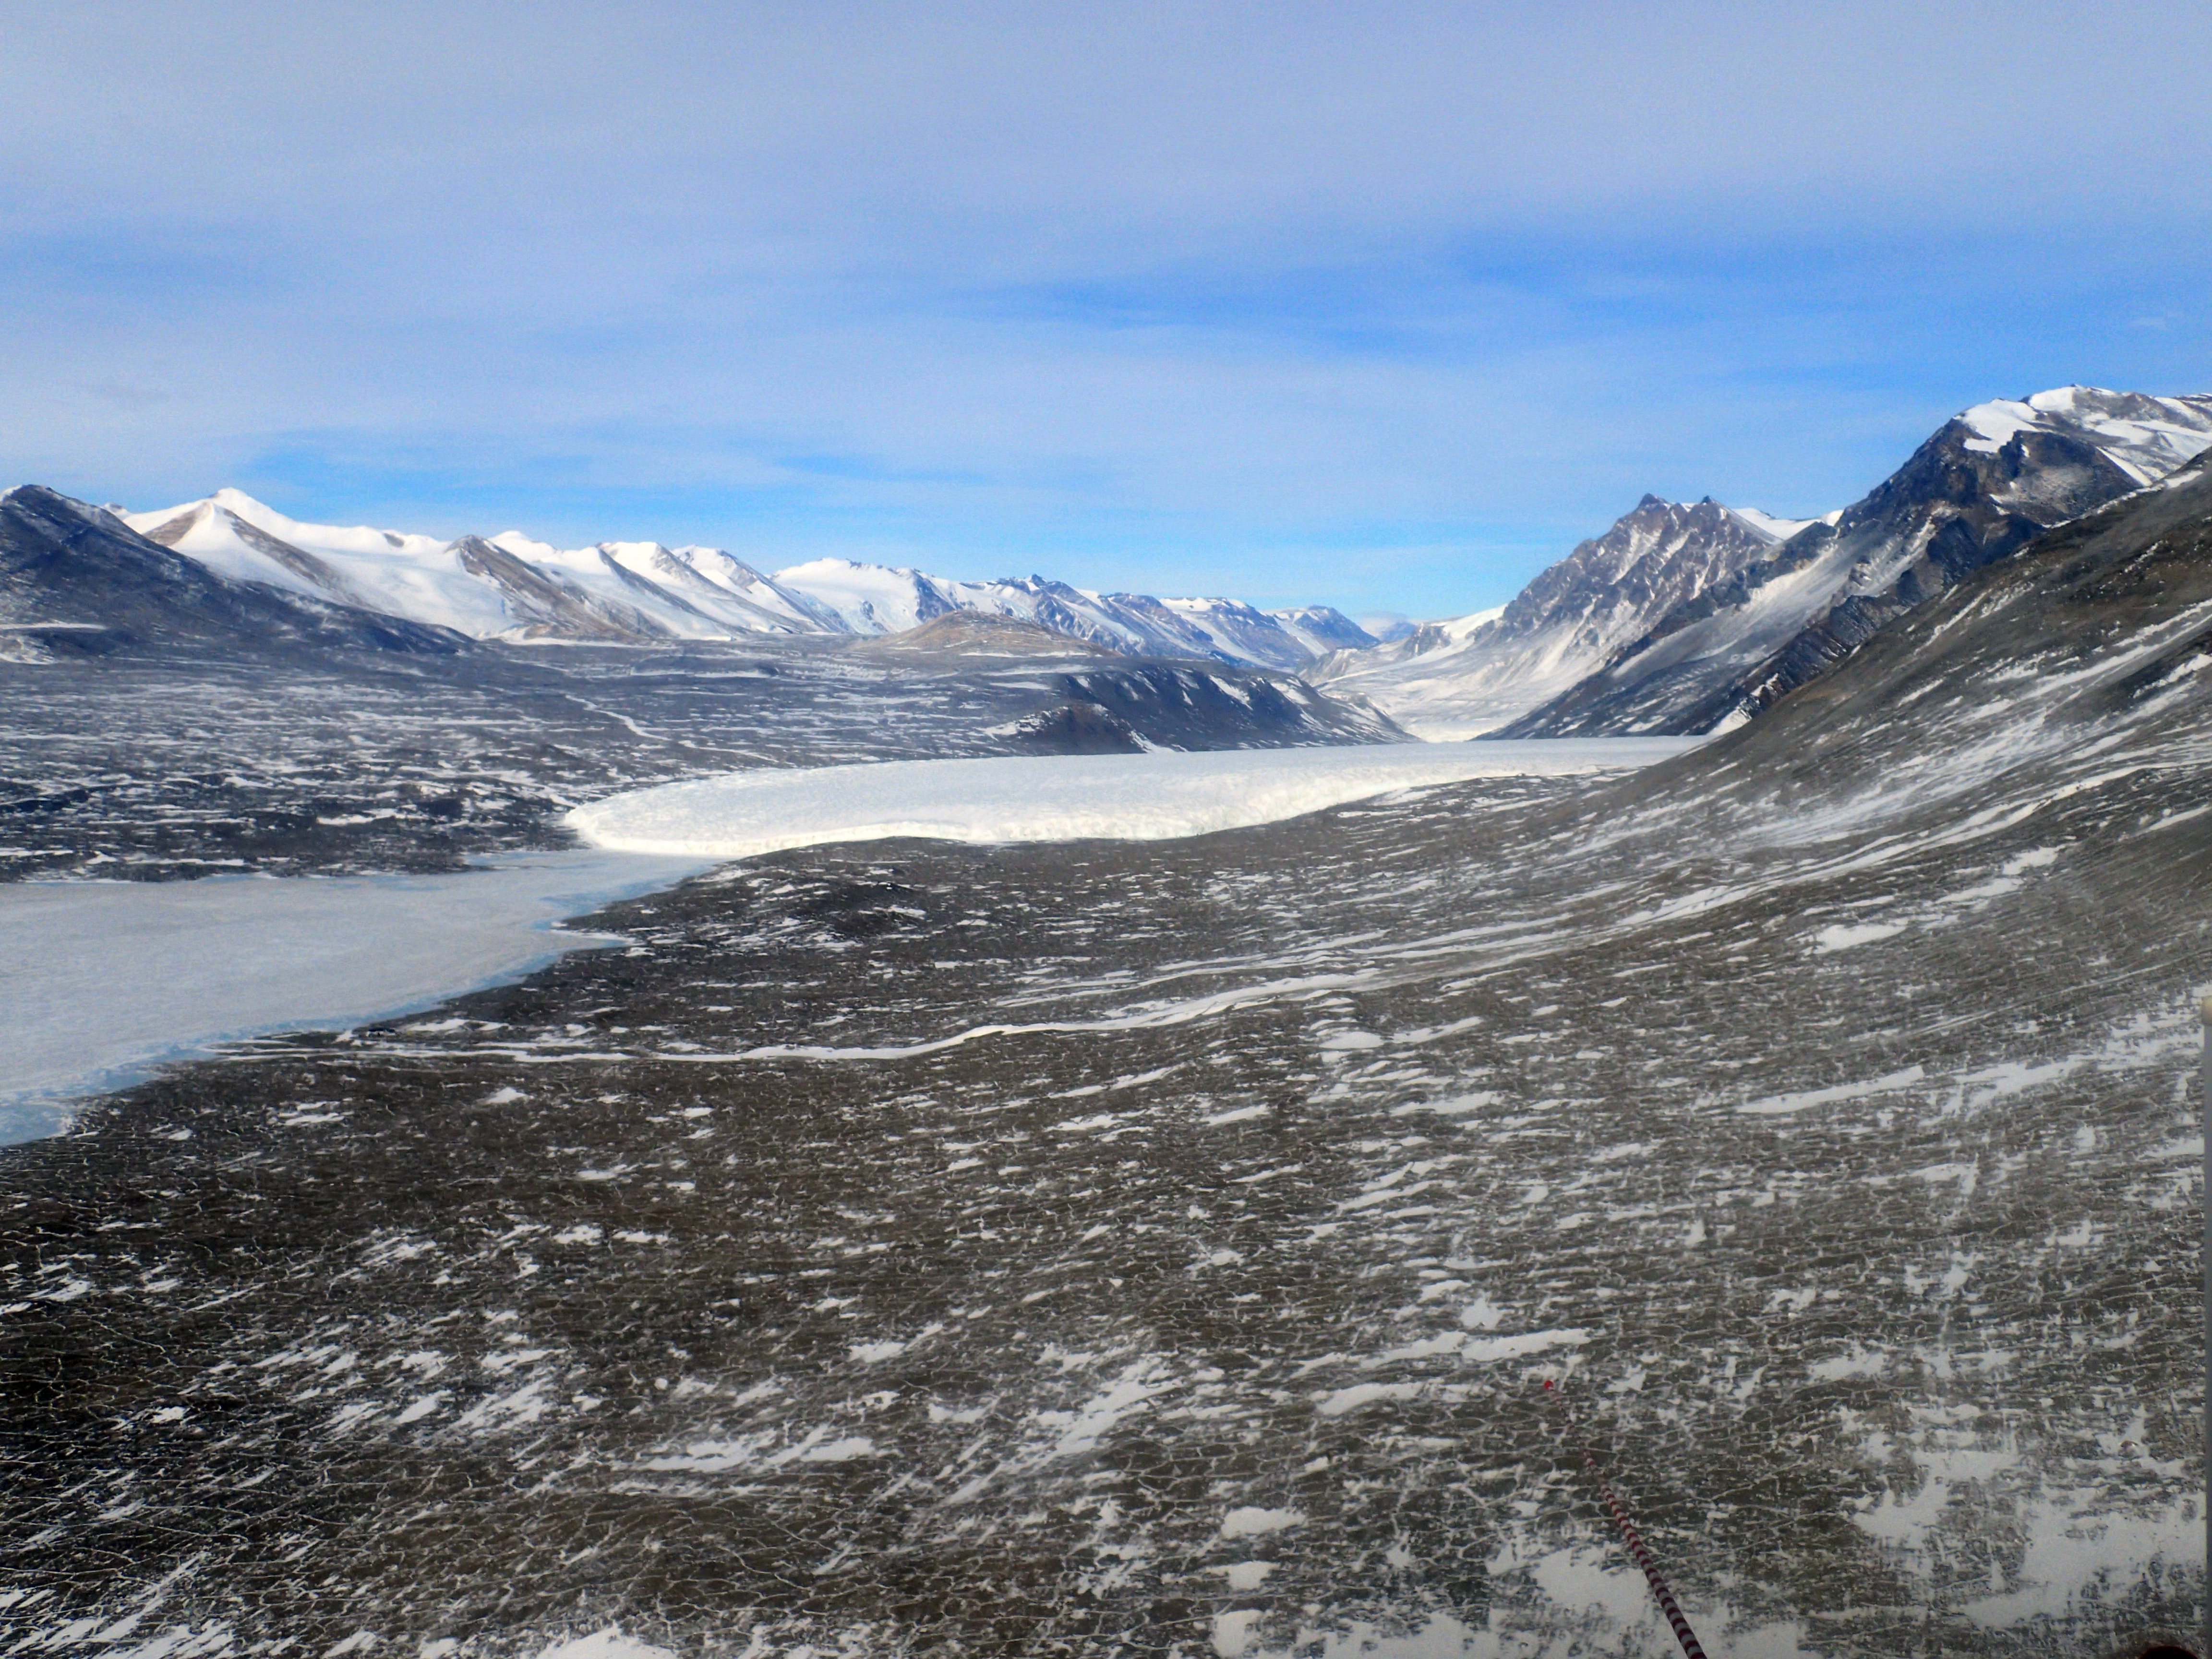 A wide valley with a glacier.